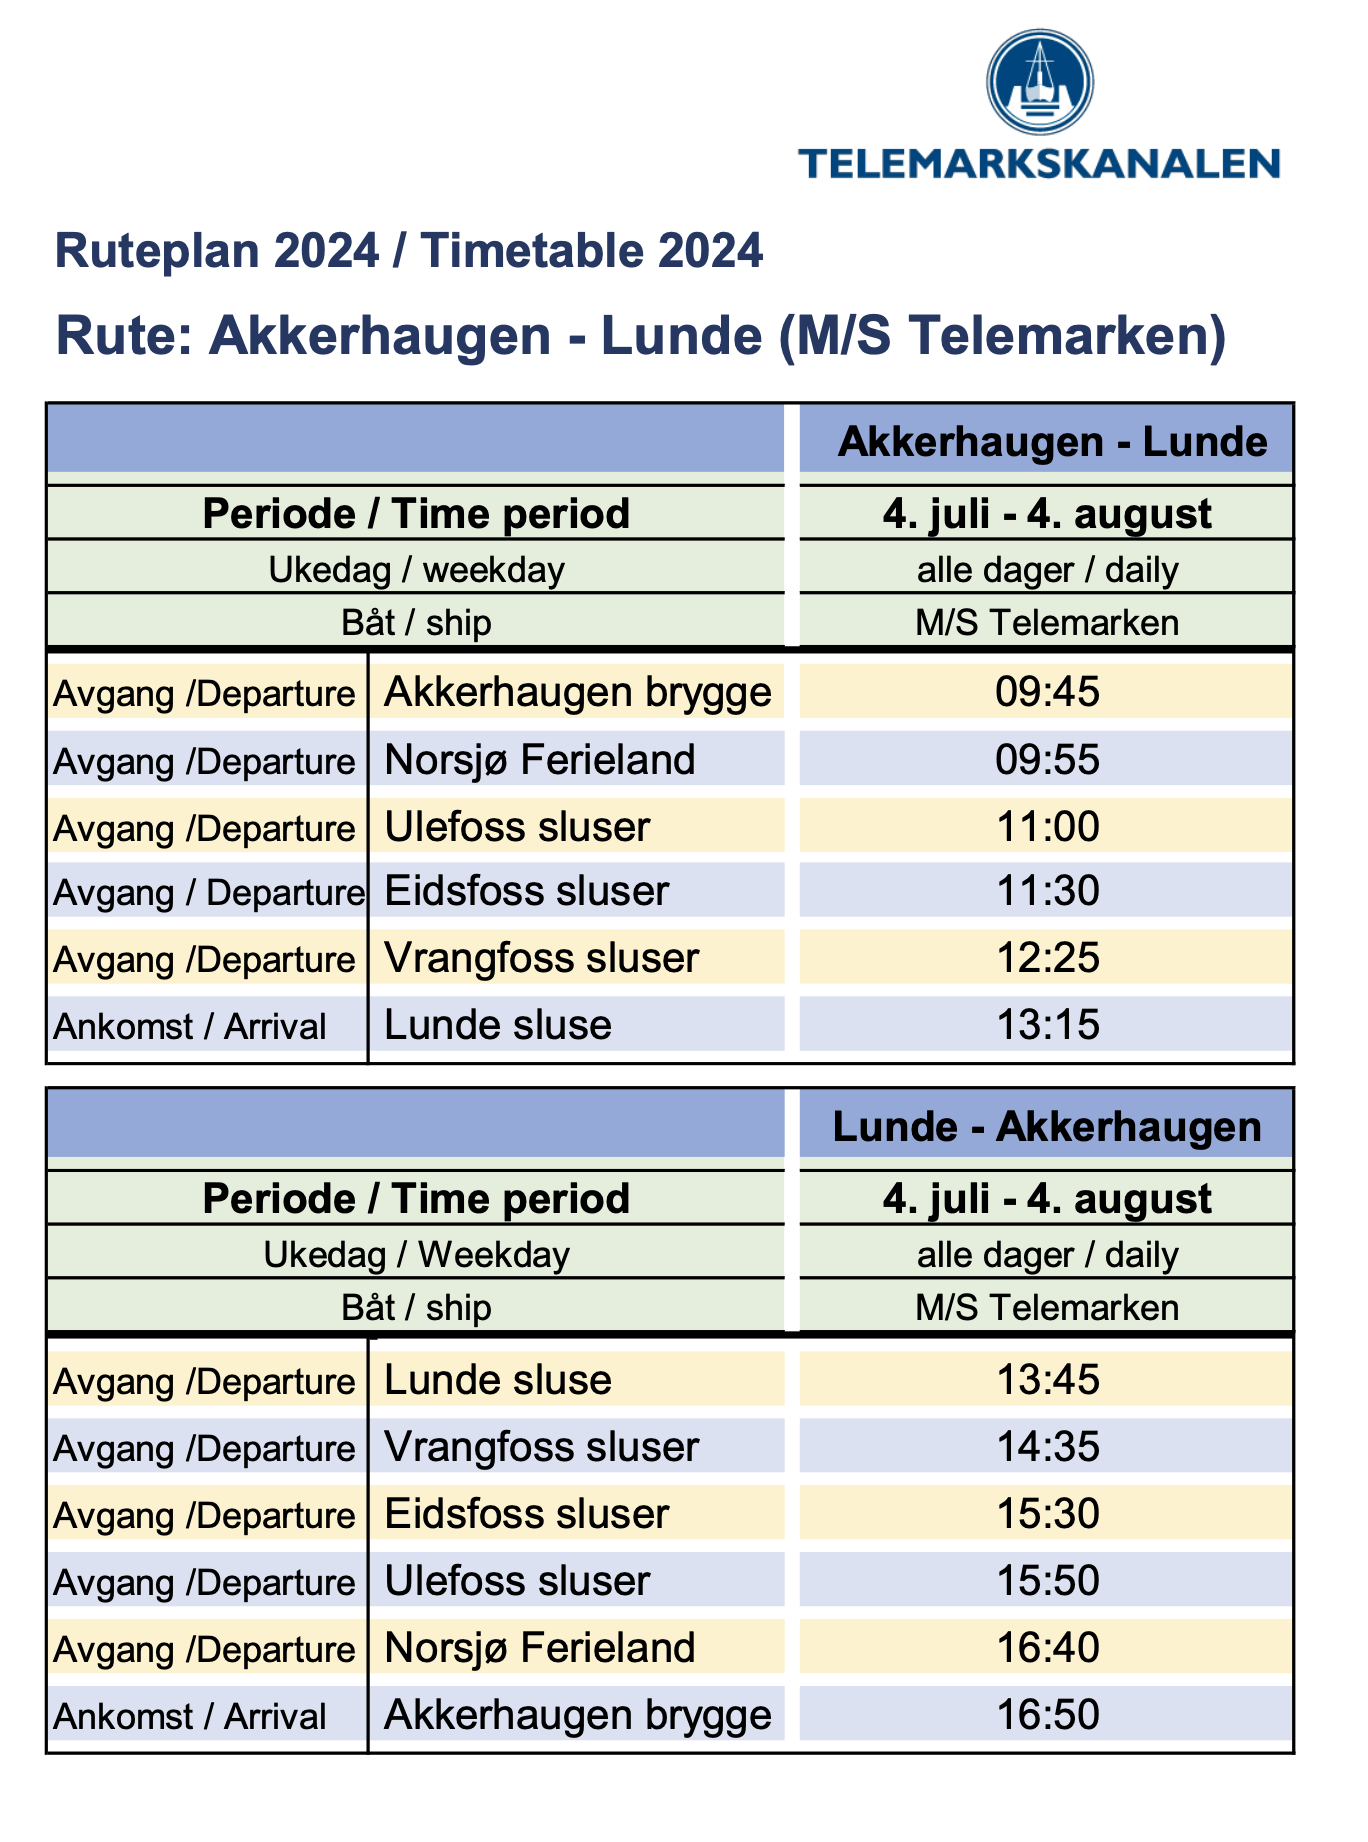 Ruteplan 2024 Akkerhaugen - Lunde